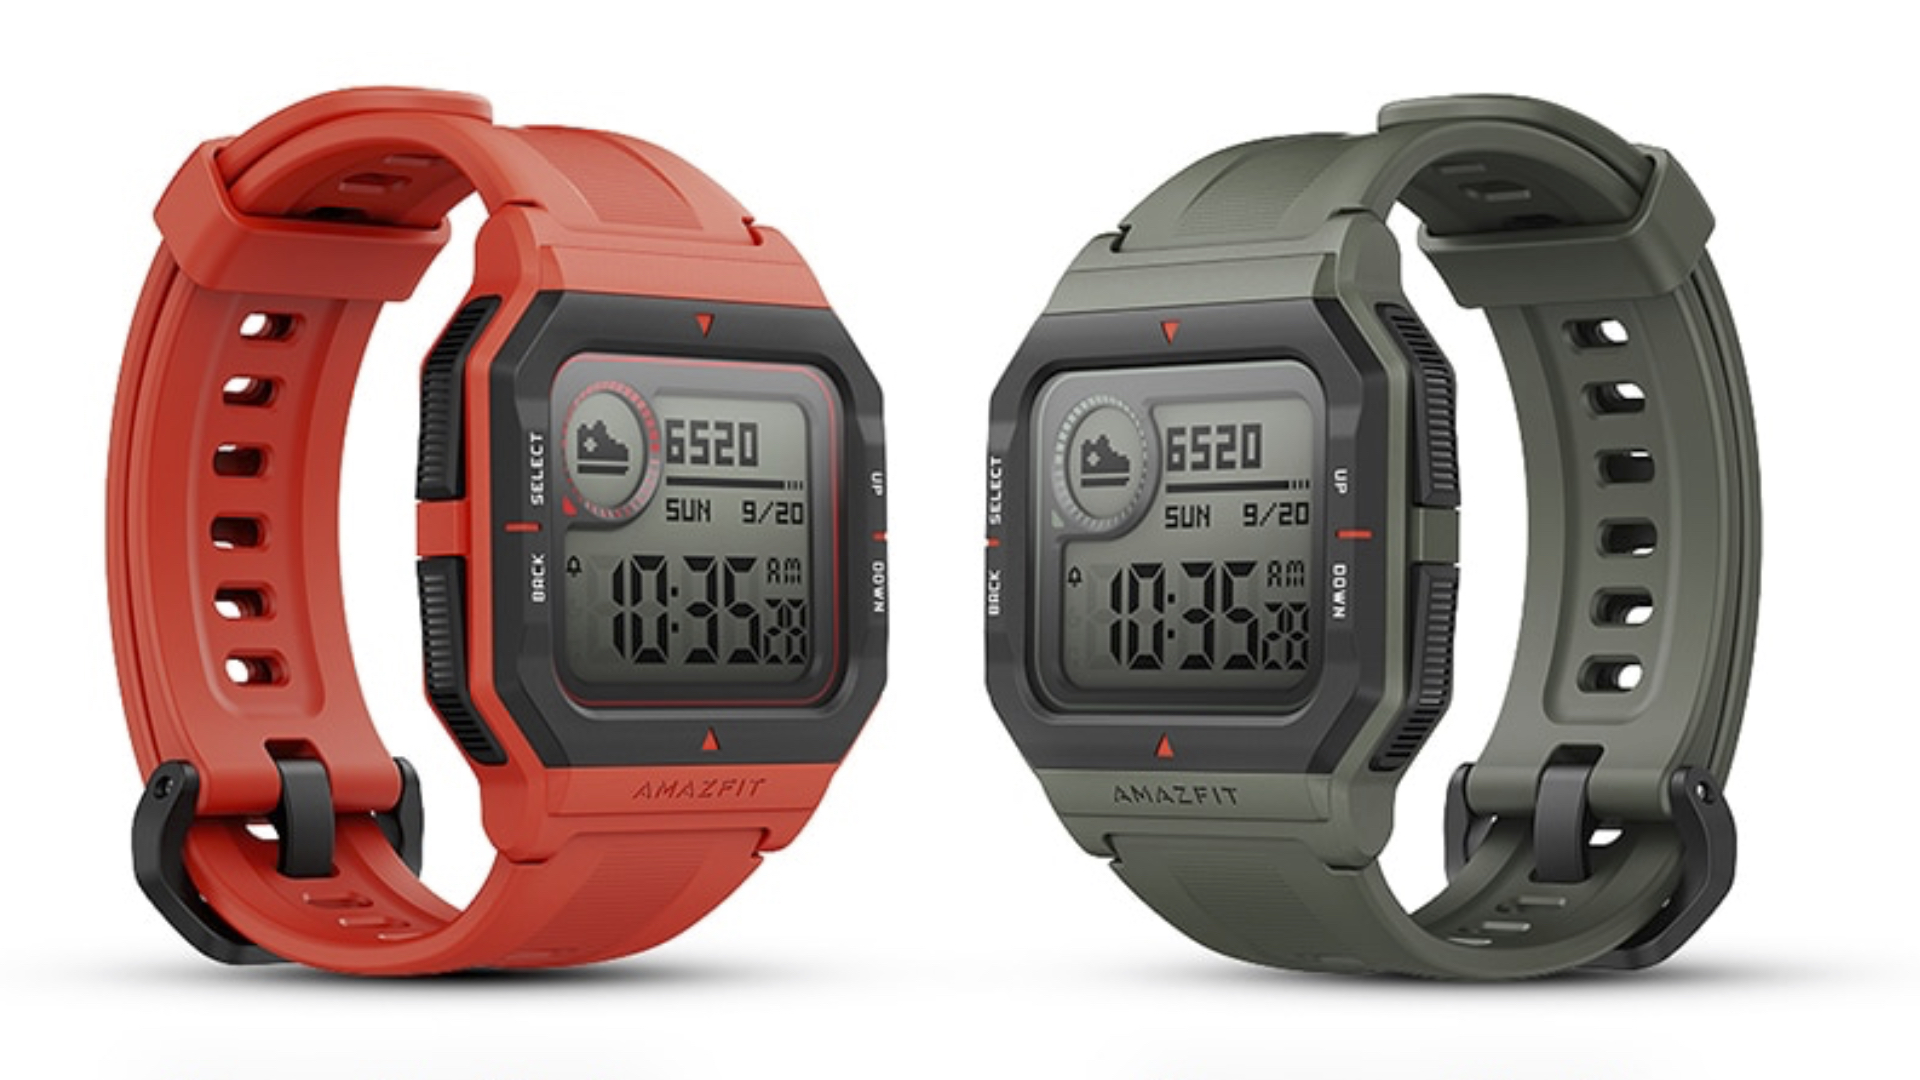 Relógio Smartwatch Amazfit GTR 2 A1952